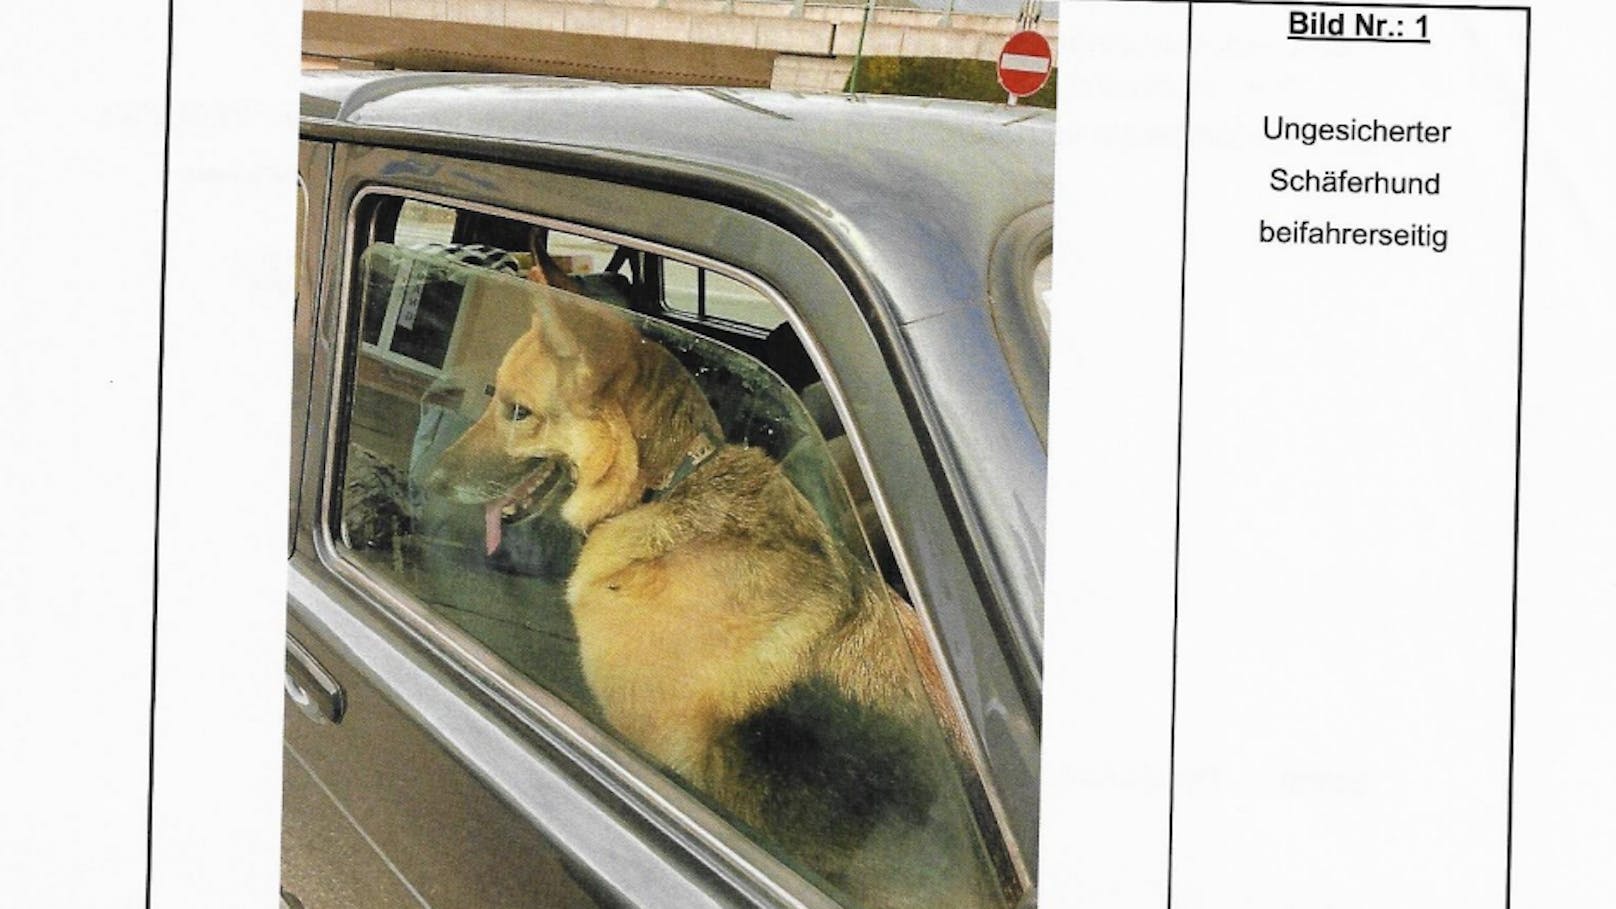 Das Original-Foto von "Elly" auf dem Beifahrersitz im Zuge der Polizeikontrolle befindet sich im Verfahrensakt.